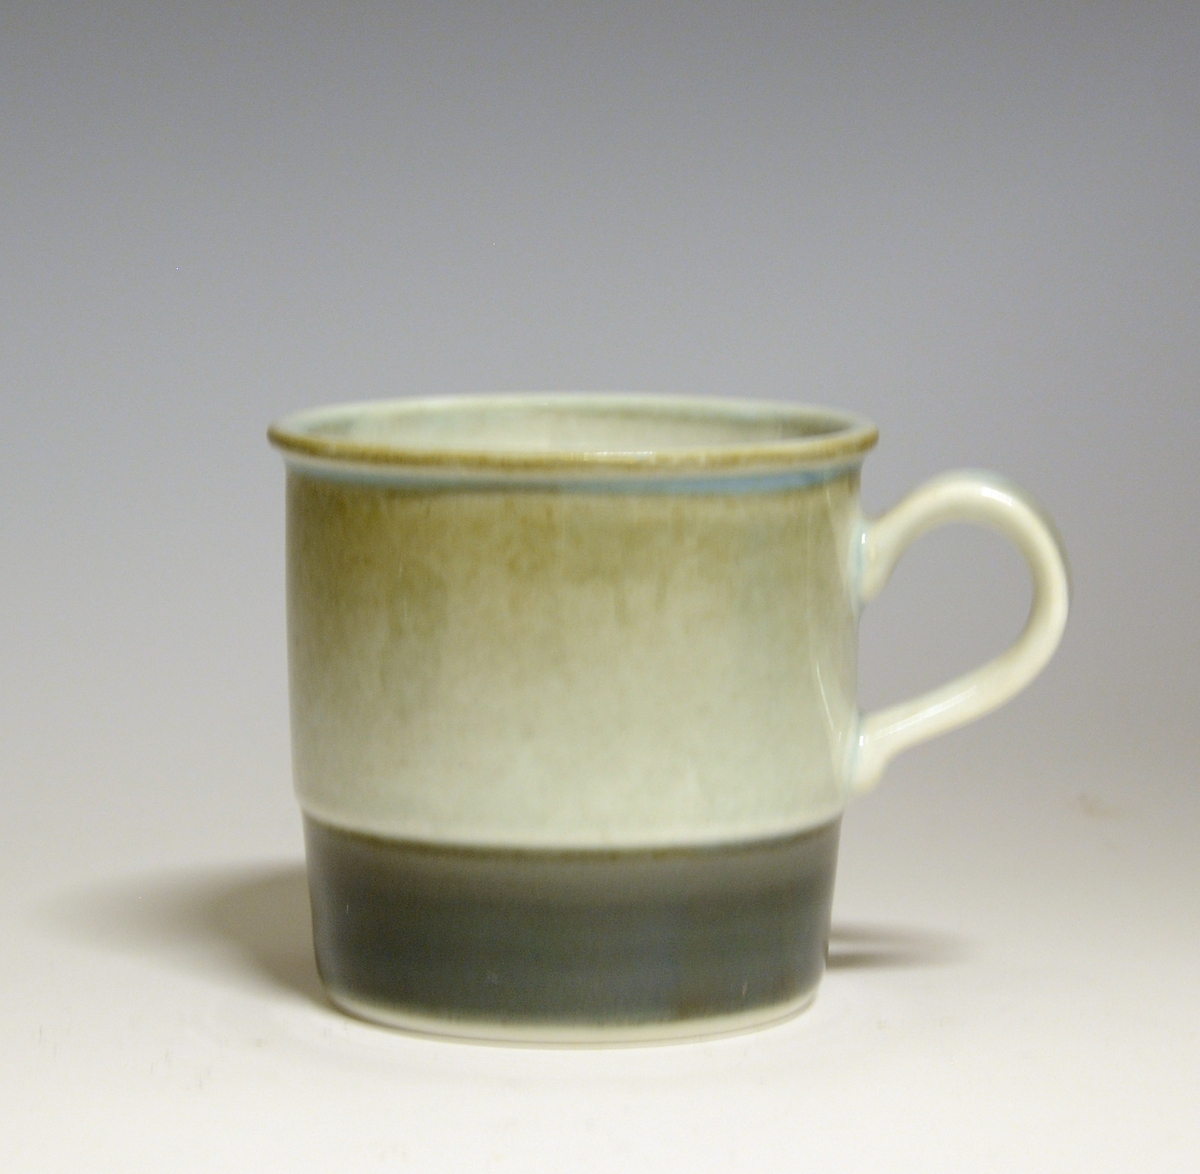 Kaffekopp av porselen. Nederst en bred grønn stripe.
Modell 444/1 Eystein
Dekor: 88306 Tundra